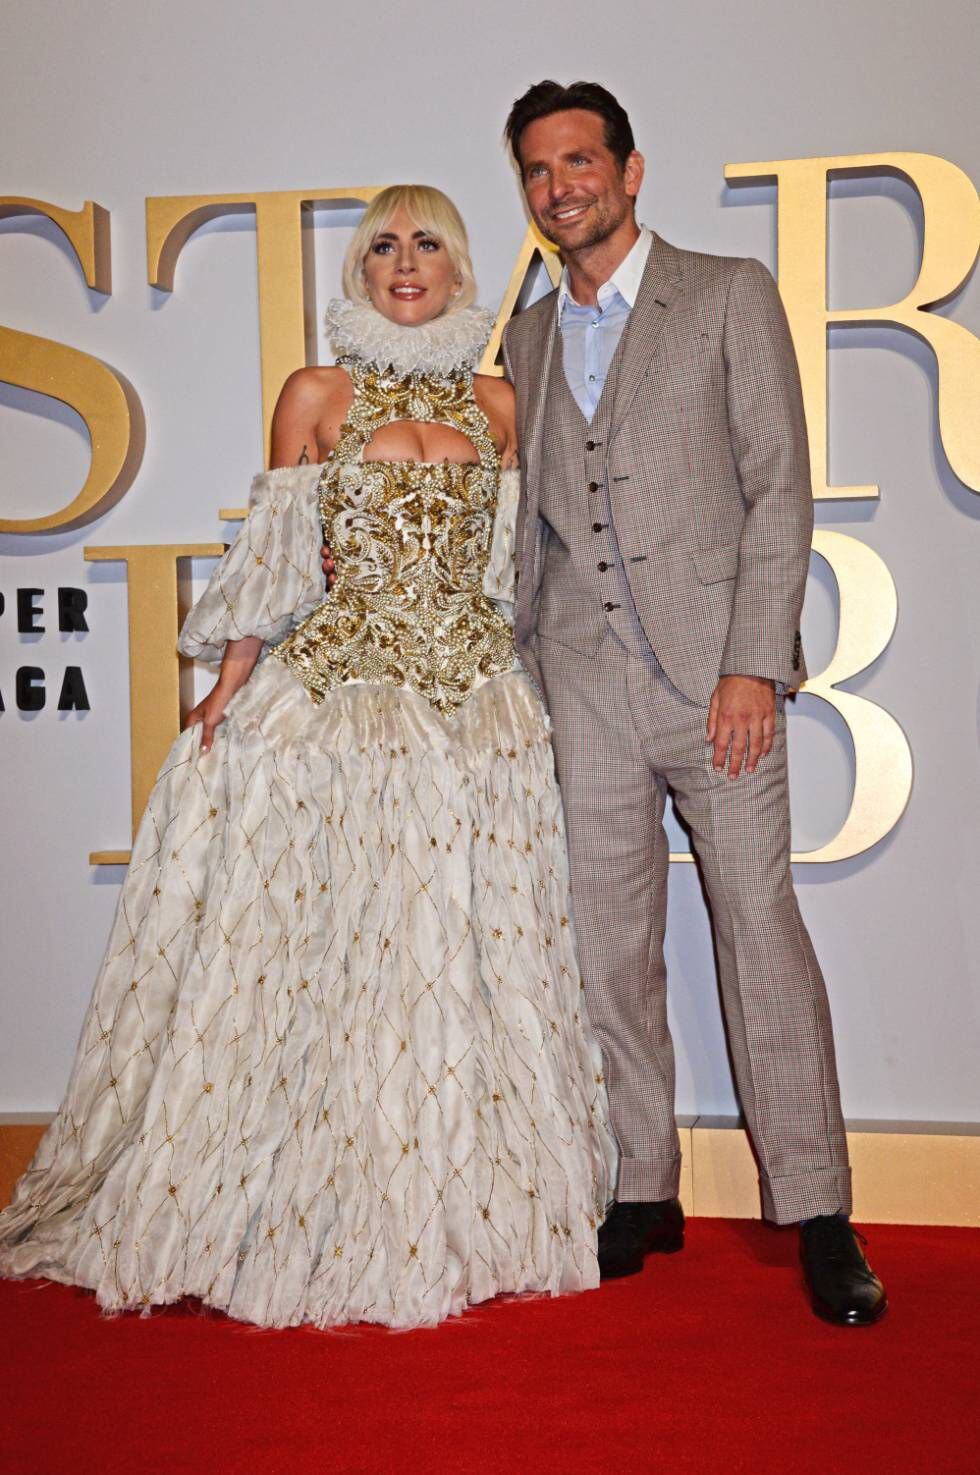 Lady Gaga com Bradley Cooper, durante apresentação do filme que protagonizam juntos.